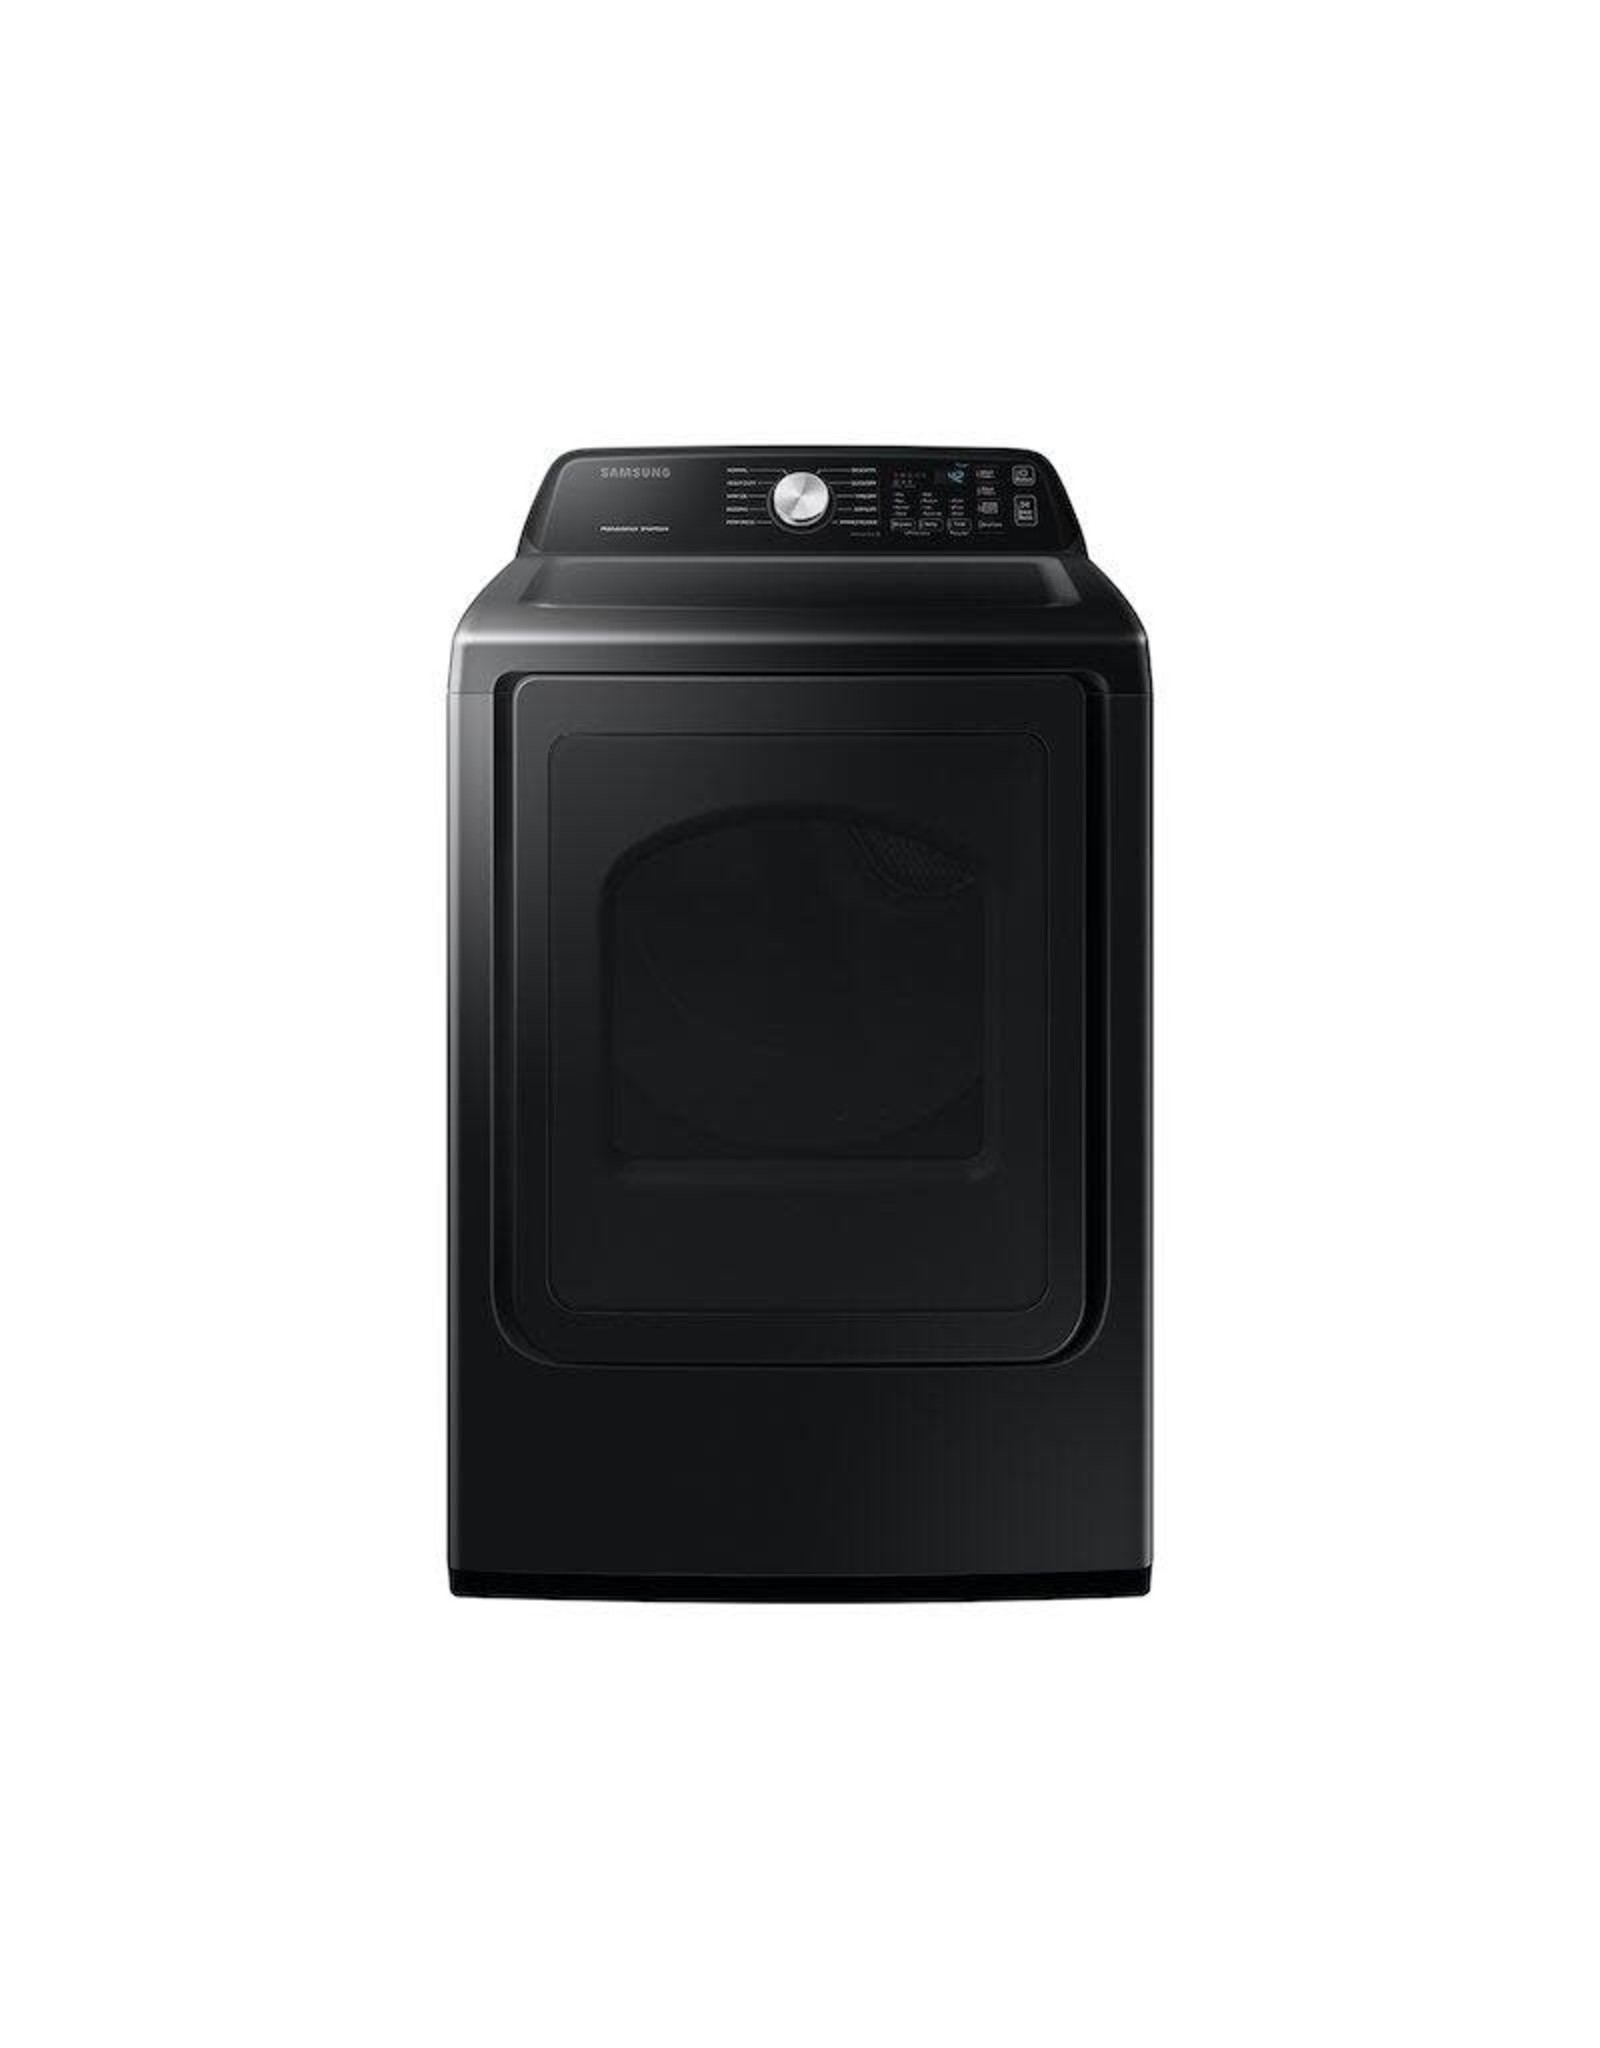 SAMSUNG DVE50R5200V 7.4 cu. ft. Brushed Black Electric Dryer with Sensor Dry